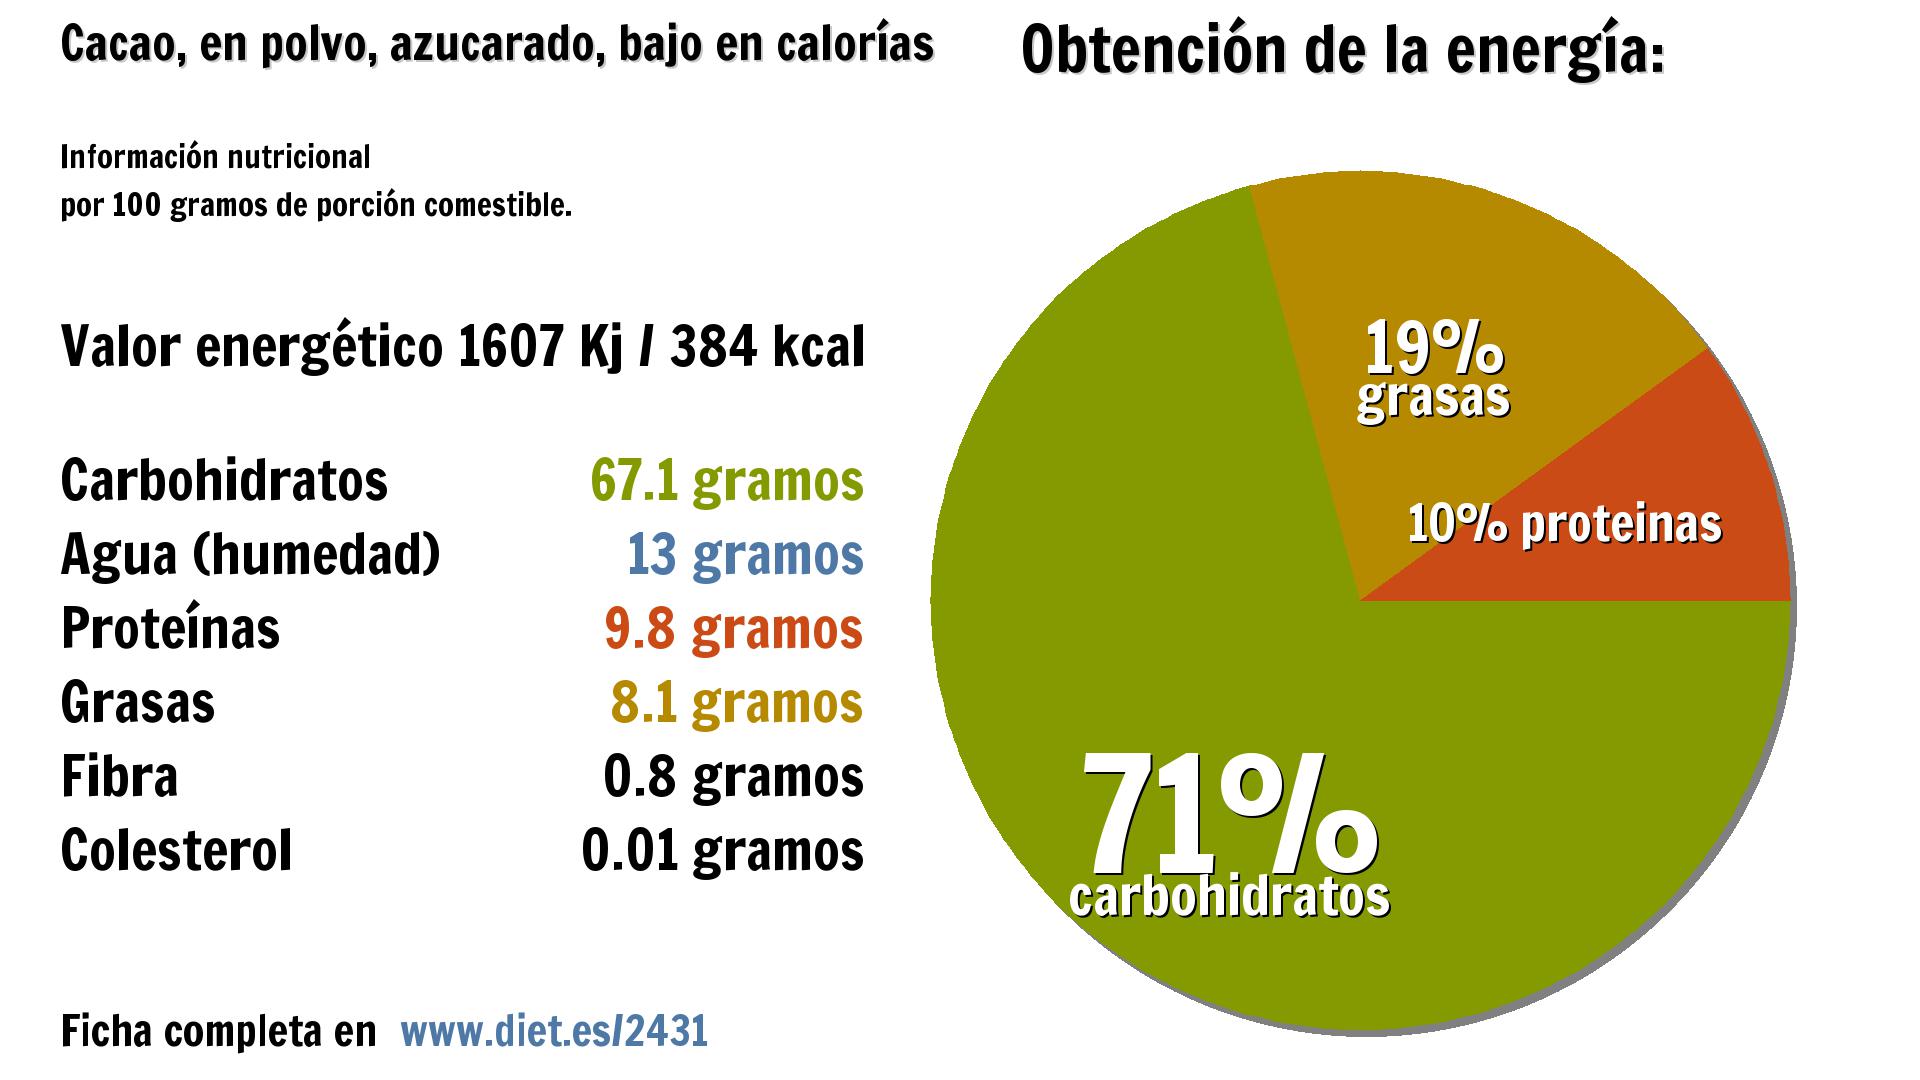 Cacao, en polvo, azucarado, bajo en calorías: energía 1607 Kj, carbohidratos 67 g., agua 13 g., proteínas 10 g., grasas 8 g. y fibra 1 g.